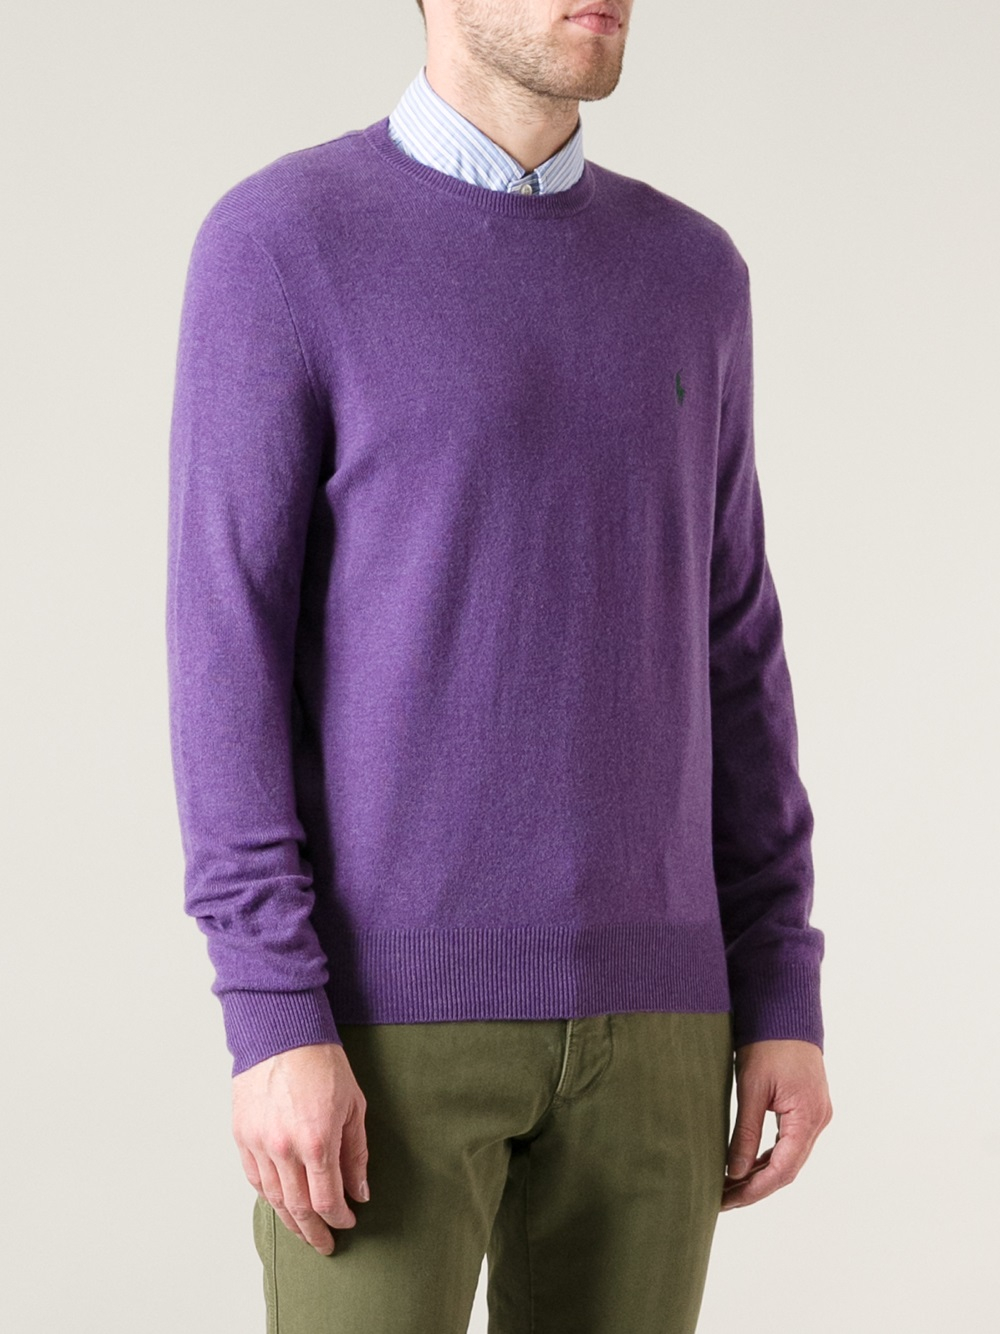 Lyst - Polo Ralph Lauren Crew Neck Sweater in Purple for Men